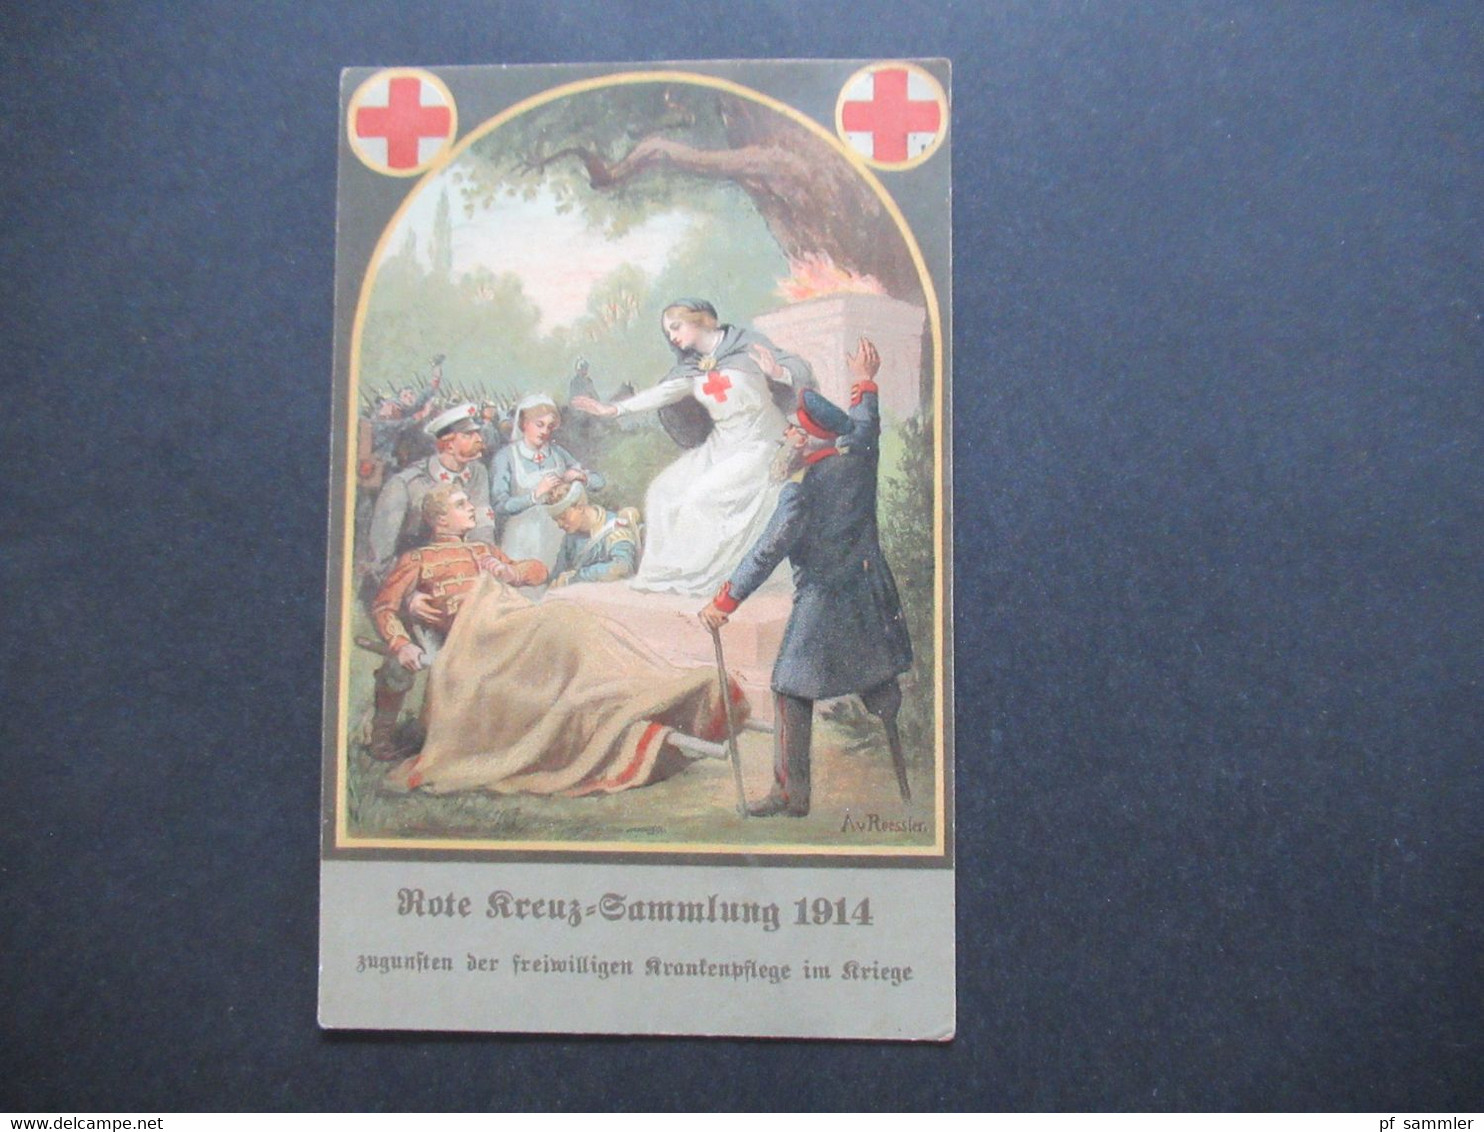 DR 1914 AK Rote Kreuz Sammlung 1914 Zugunsten Der Freiwilligen Krankenpflege Im Kriege Orts Postkarte Detmold - Rode Kruis